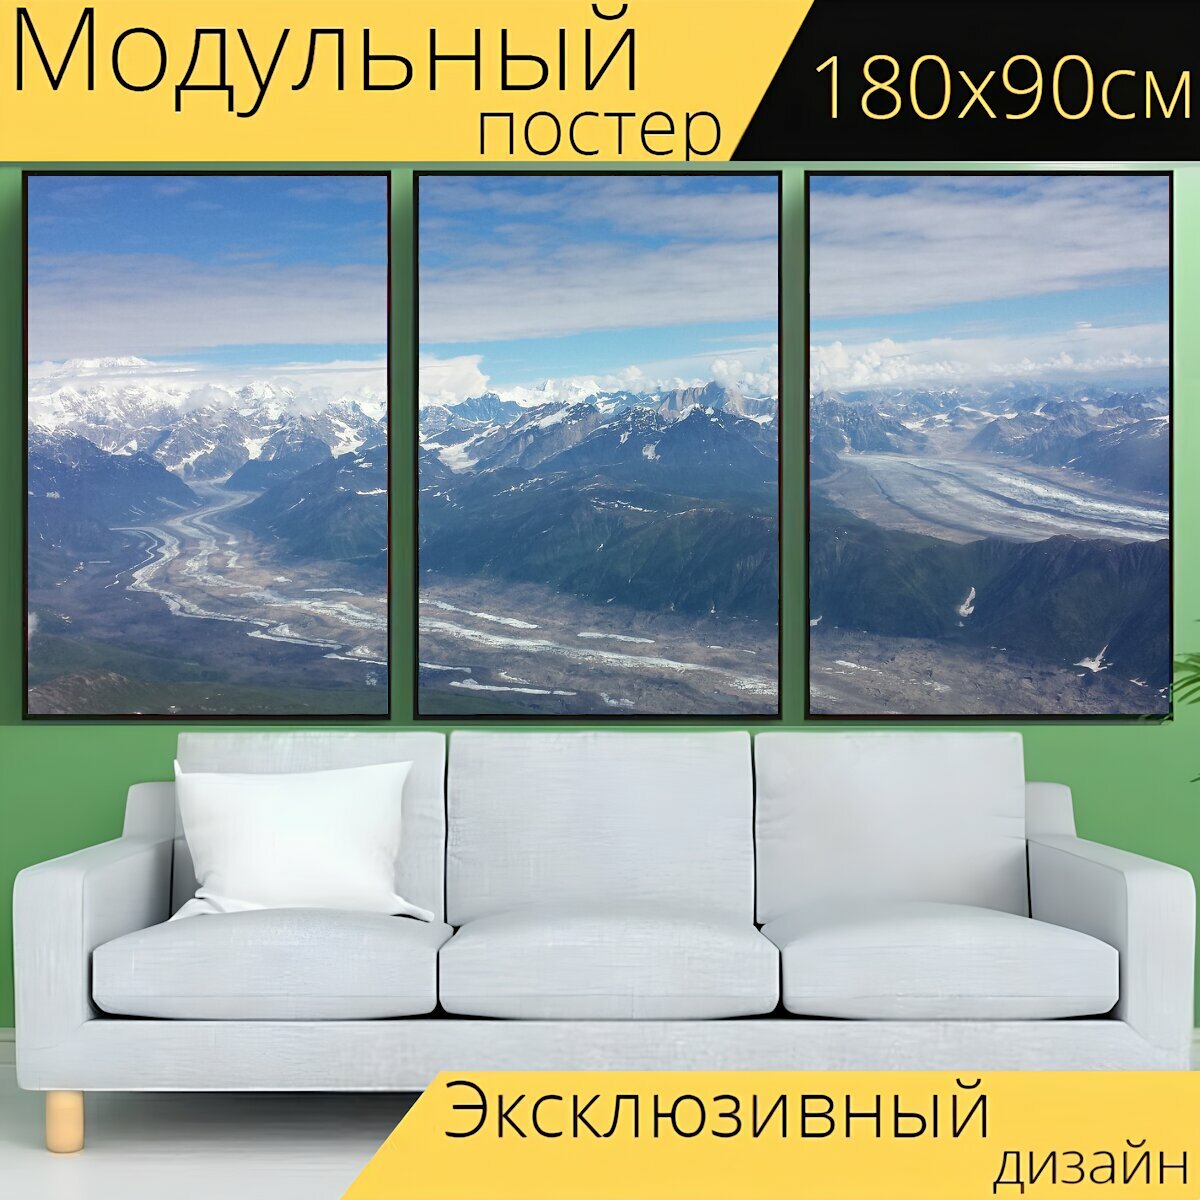 Модульный постер "Аляска, ледник, гора" 180 x 90 см. для интерьера